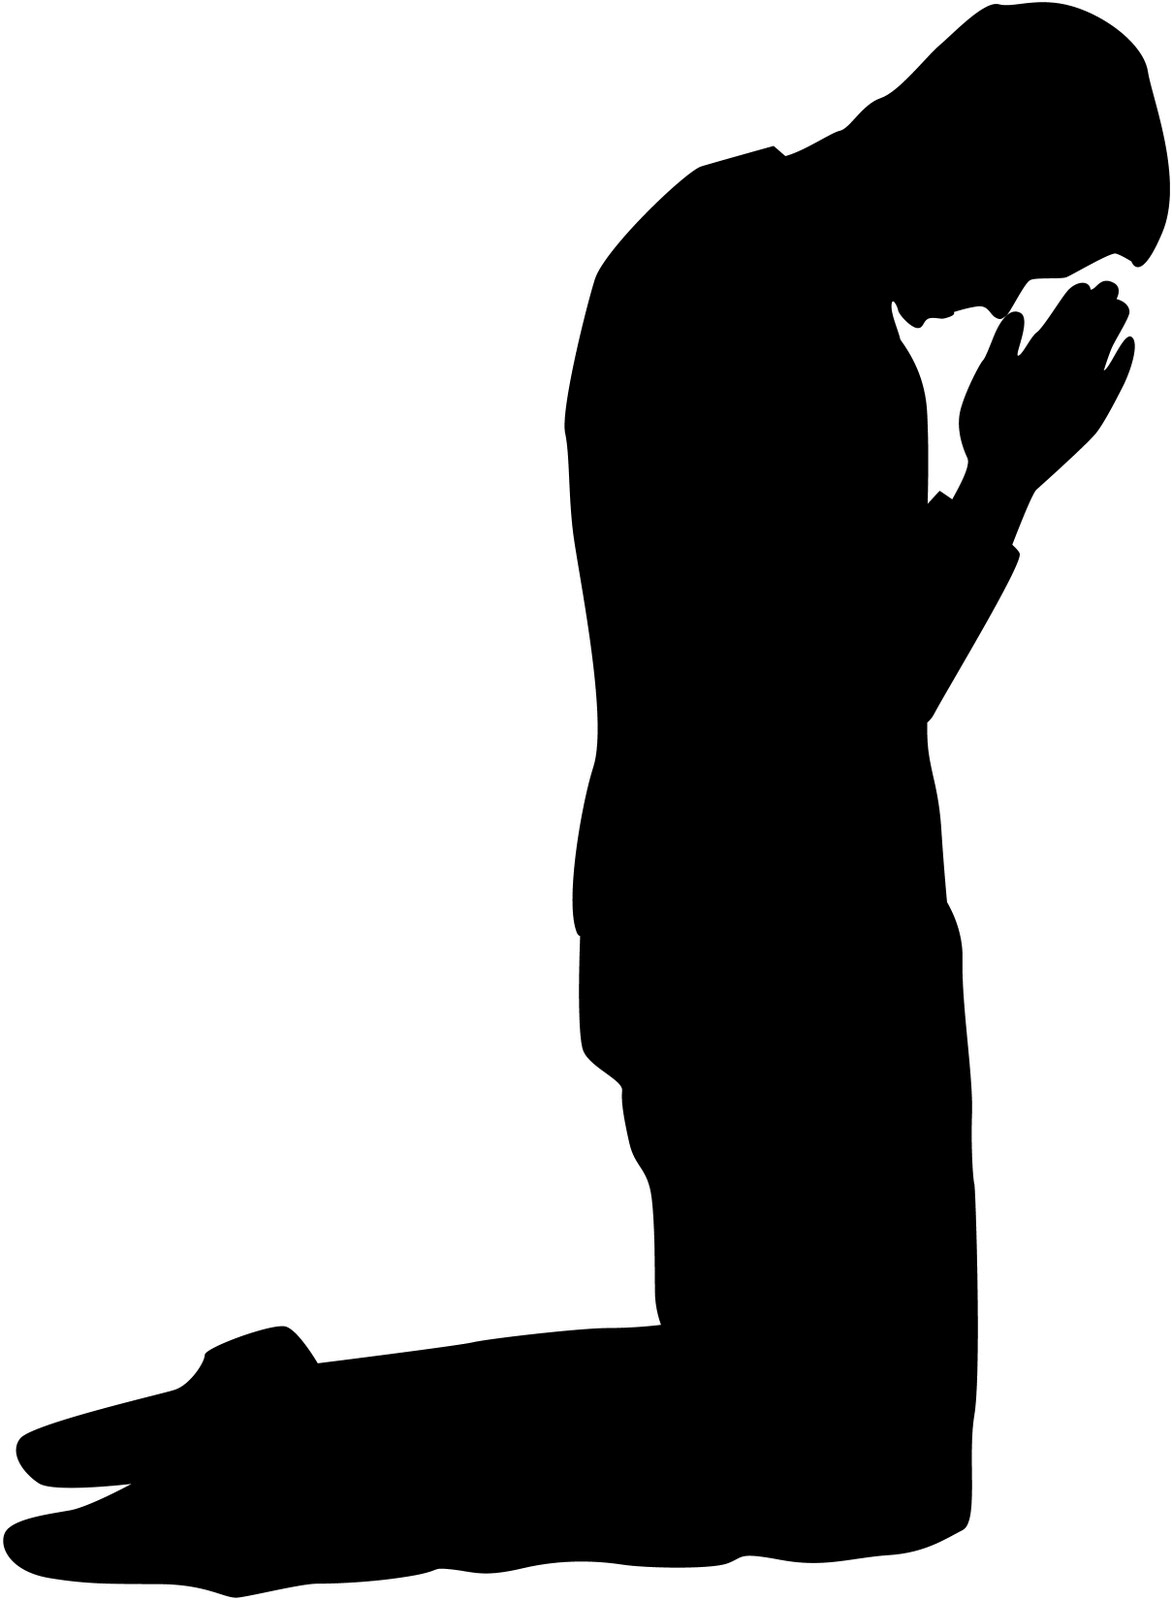 Men Praying Clipart - ClipArt Best